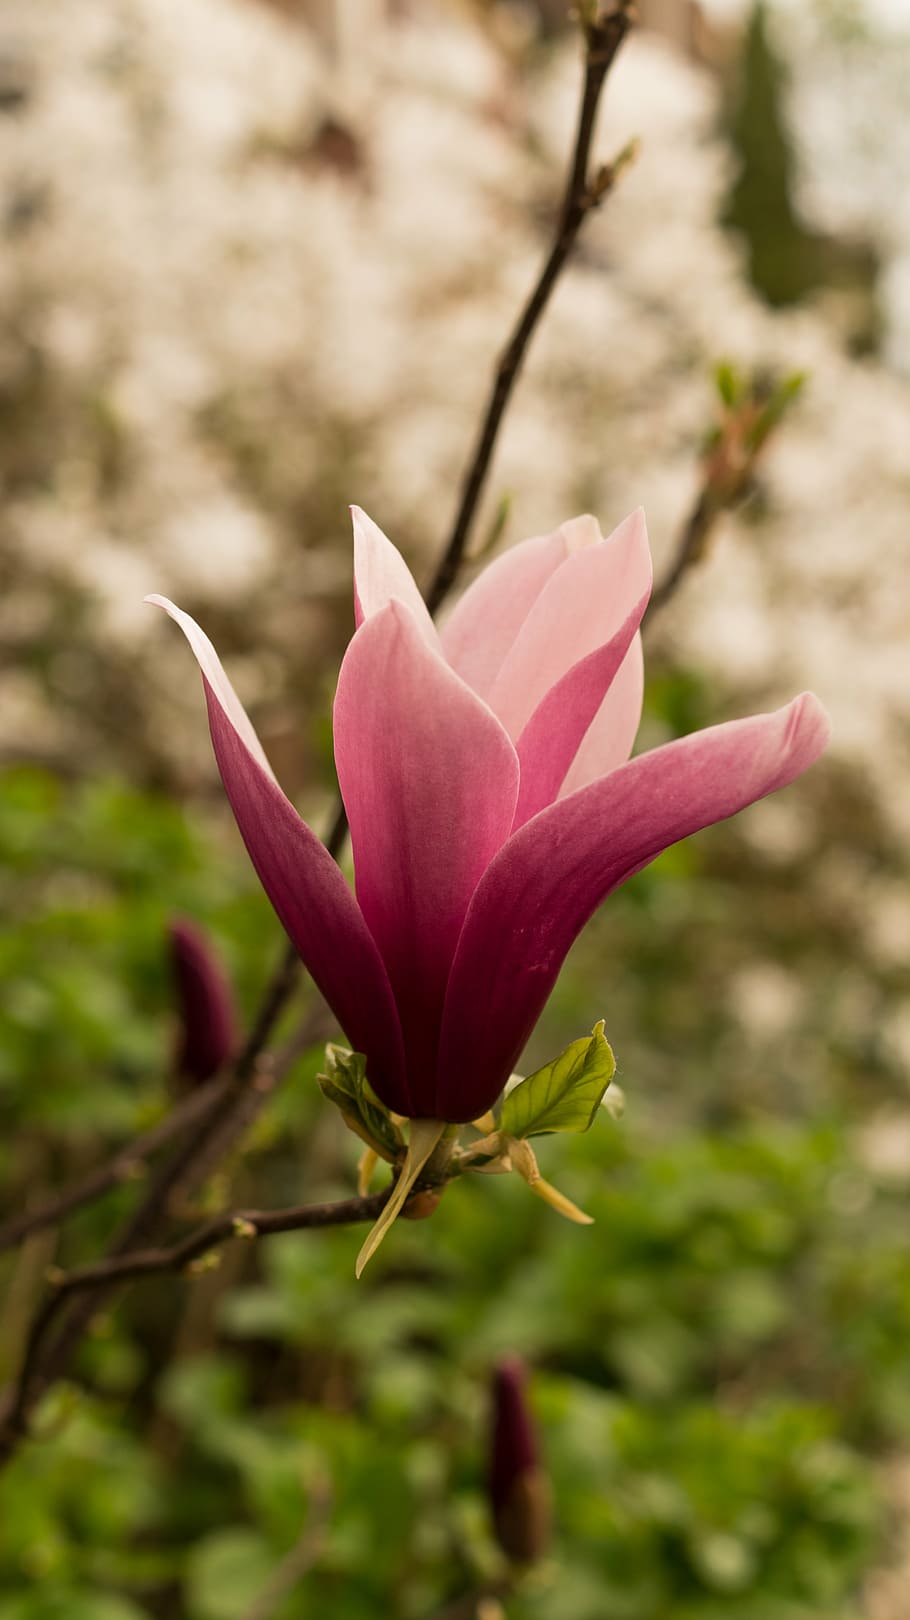 primer plano, fotografía, rosa, flor de magnolia, pétalo, flor, color rosa, naturaleza, fragilidad, enfoque en primer plano